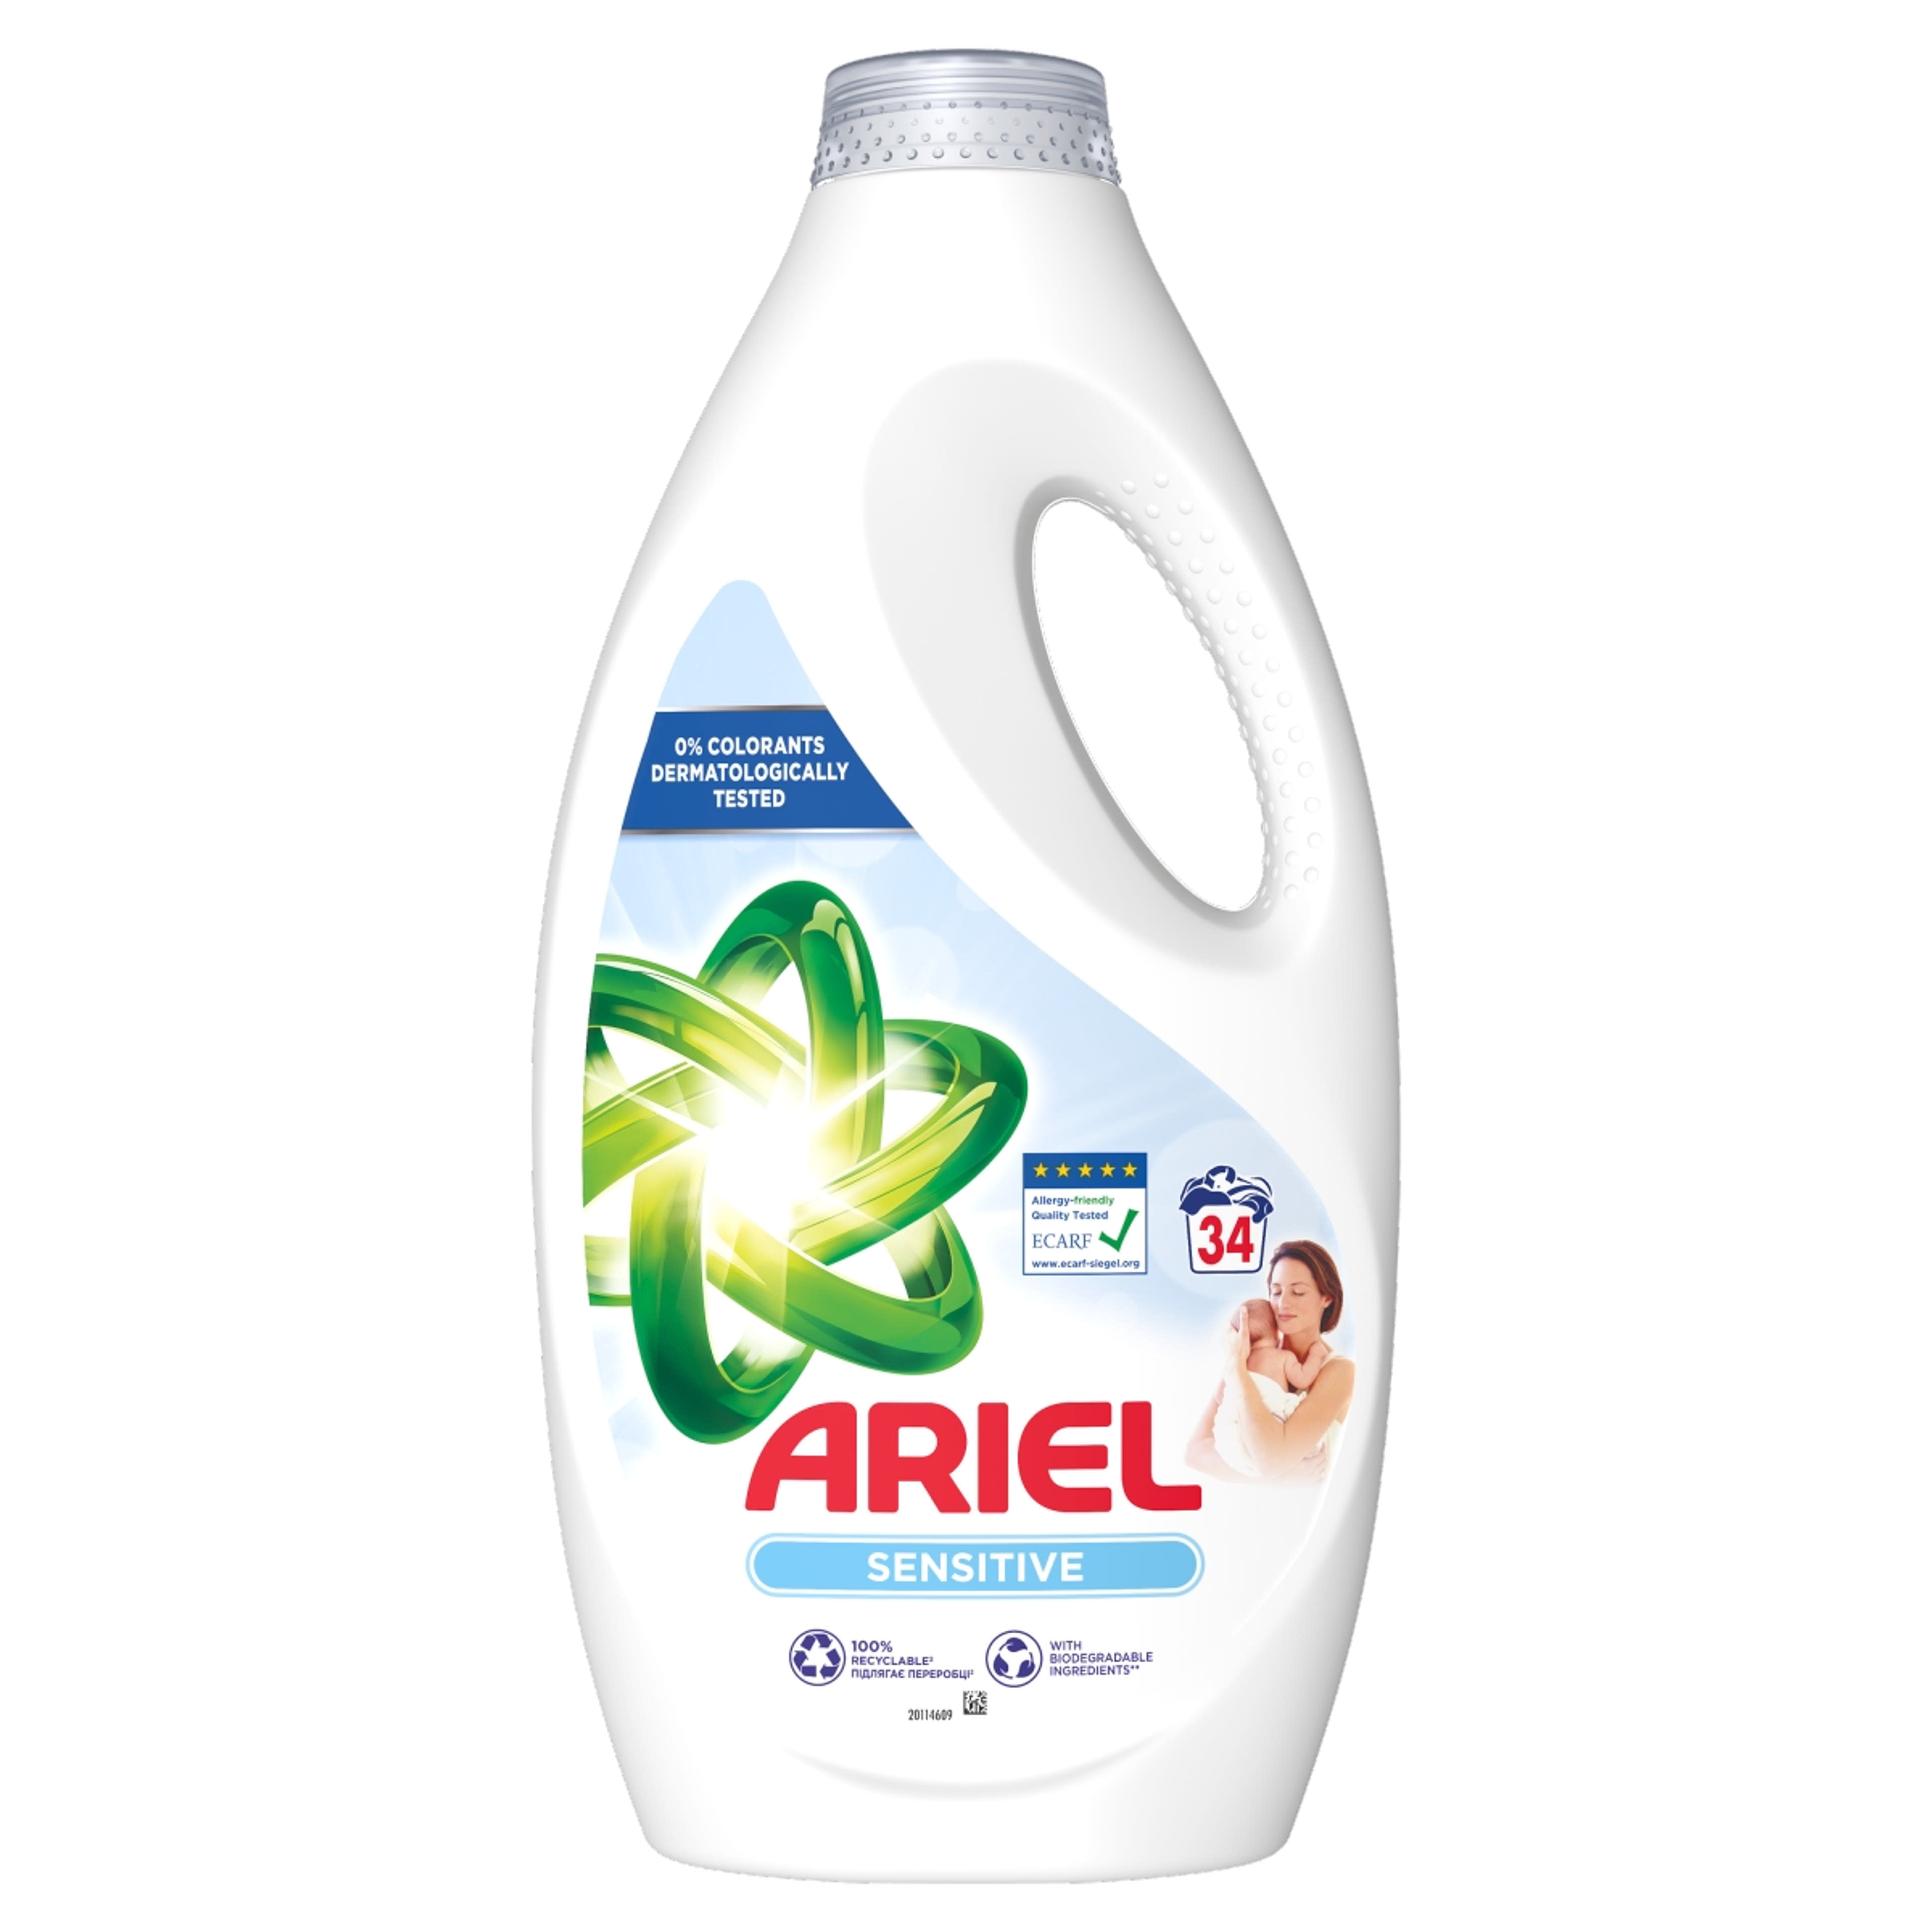 Ariel Sensitive Skin Clean & Fresh folyékony mosószer, 34 mosáshoz - 1700 ml